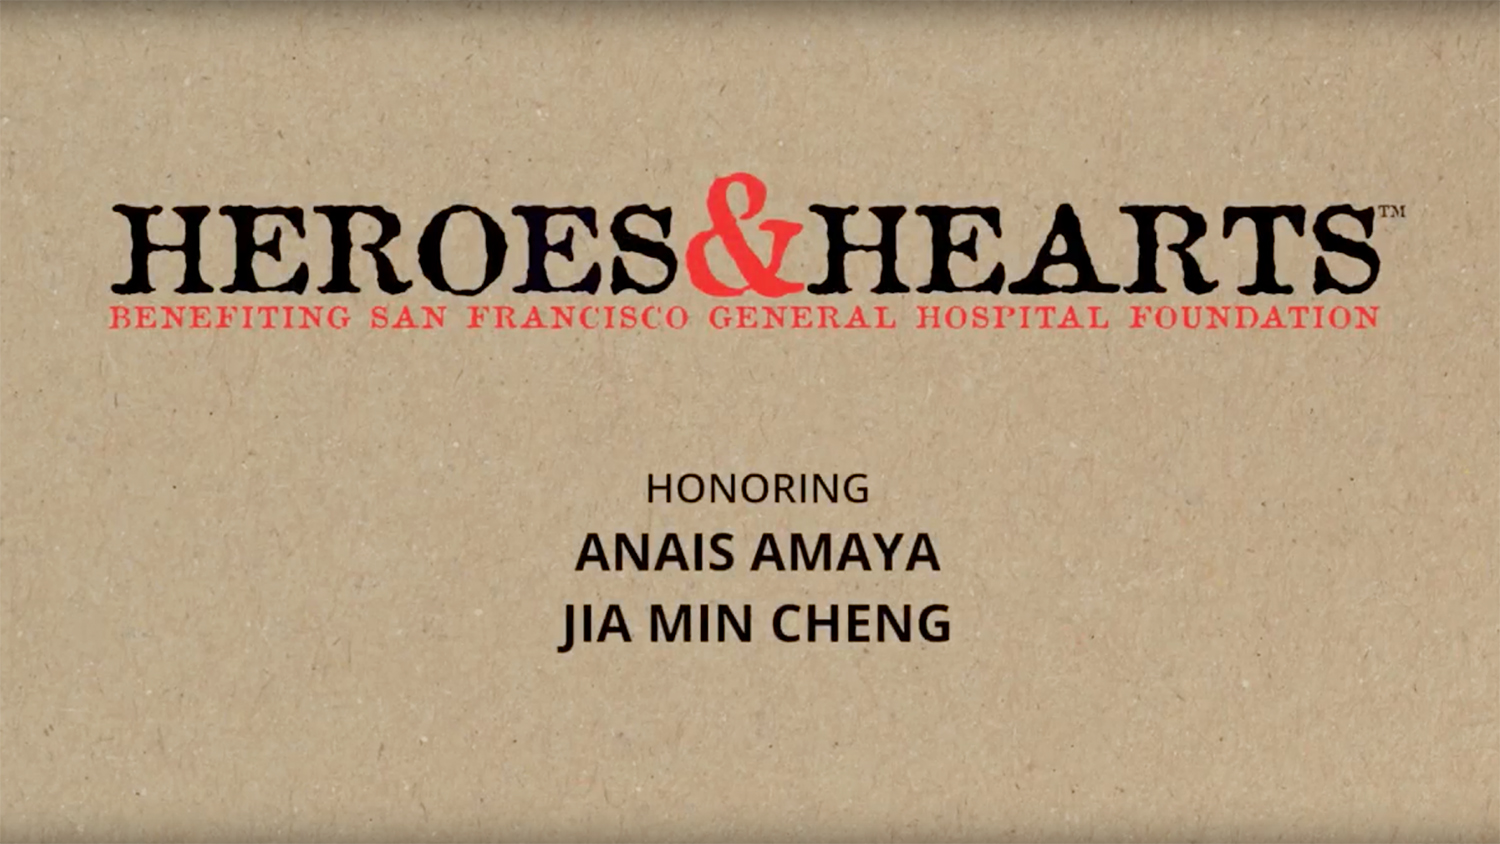 "Heroes & Hearts" benefiting San Francisco General Hospital Foundation. Honoring Anais Amaya and Jia Min Cheng.